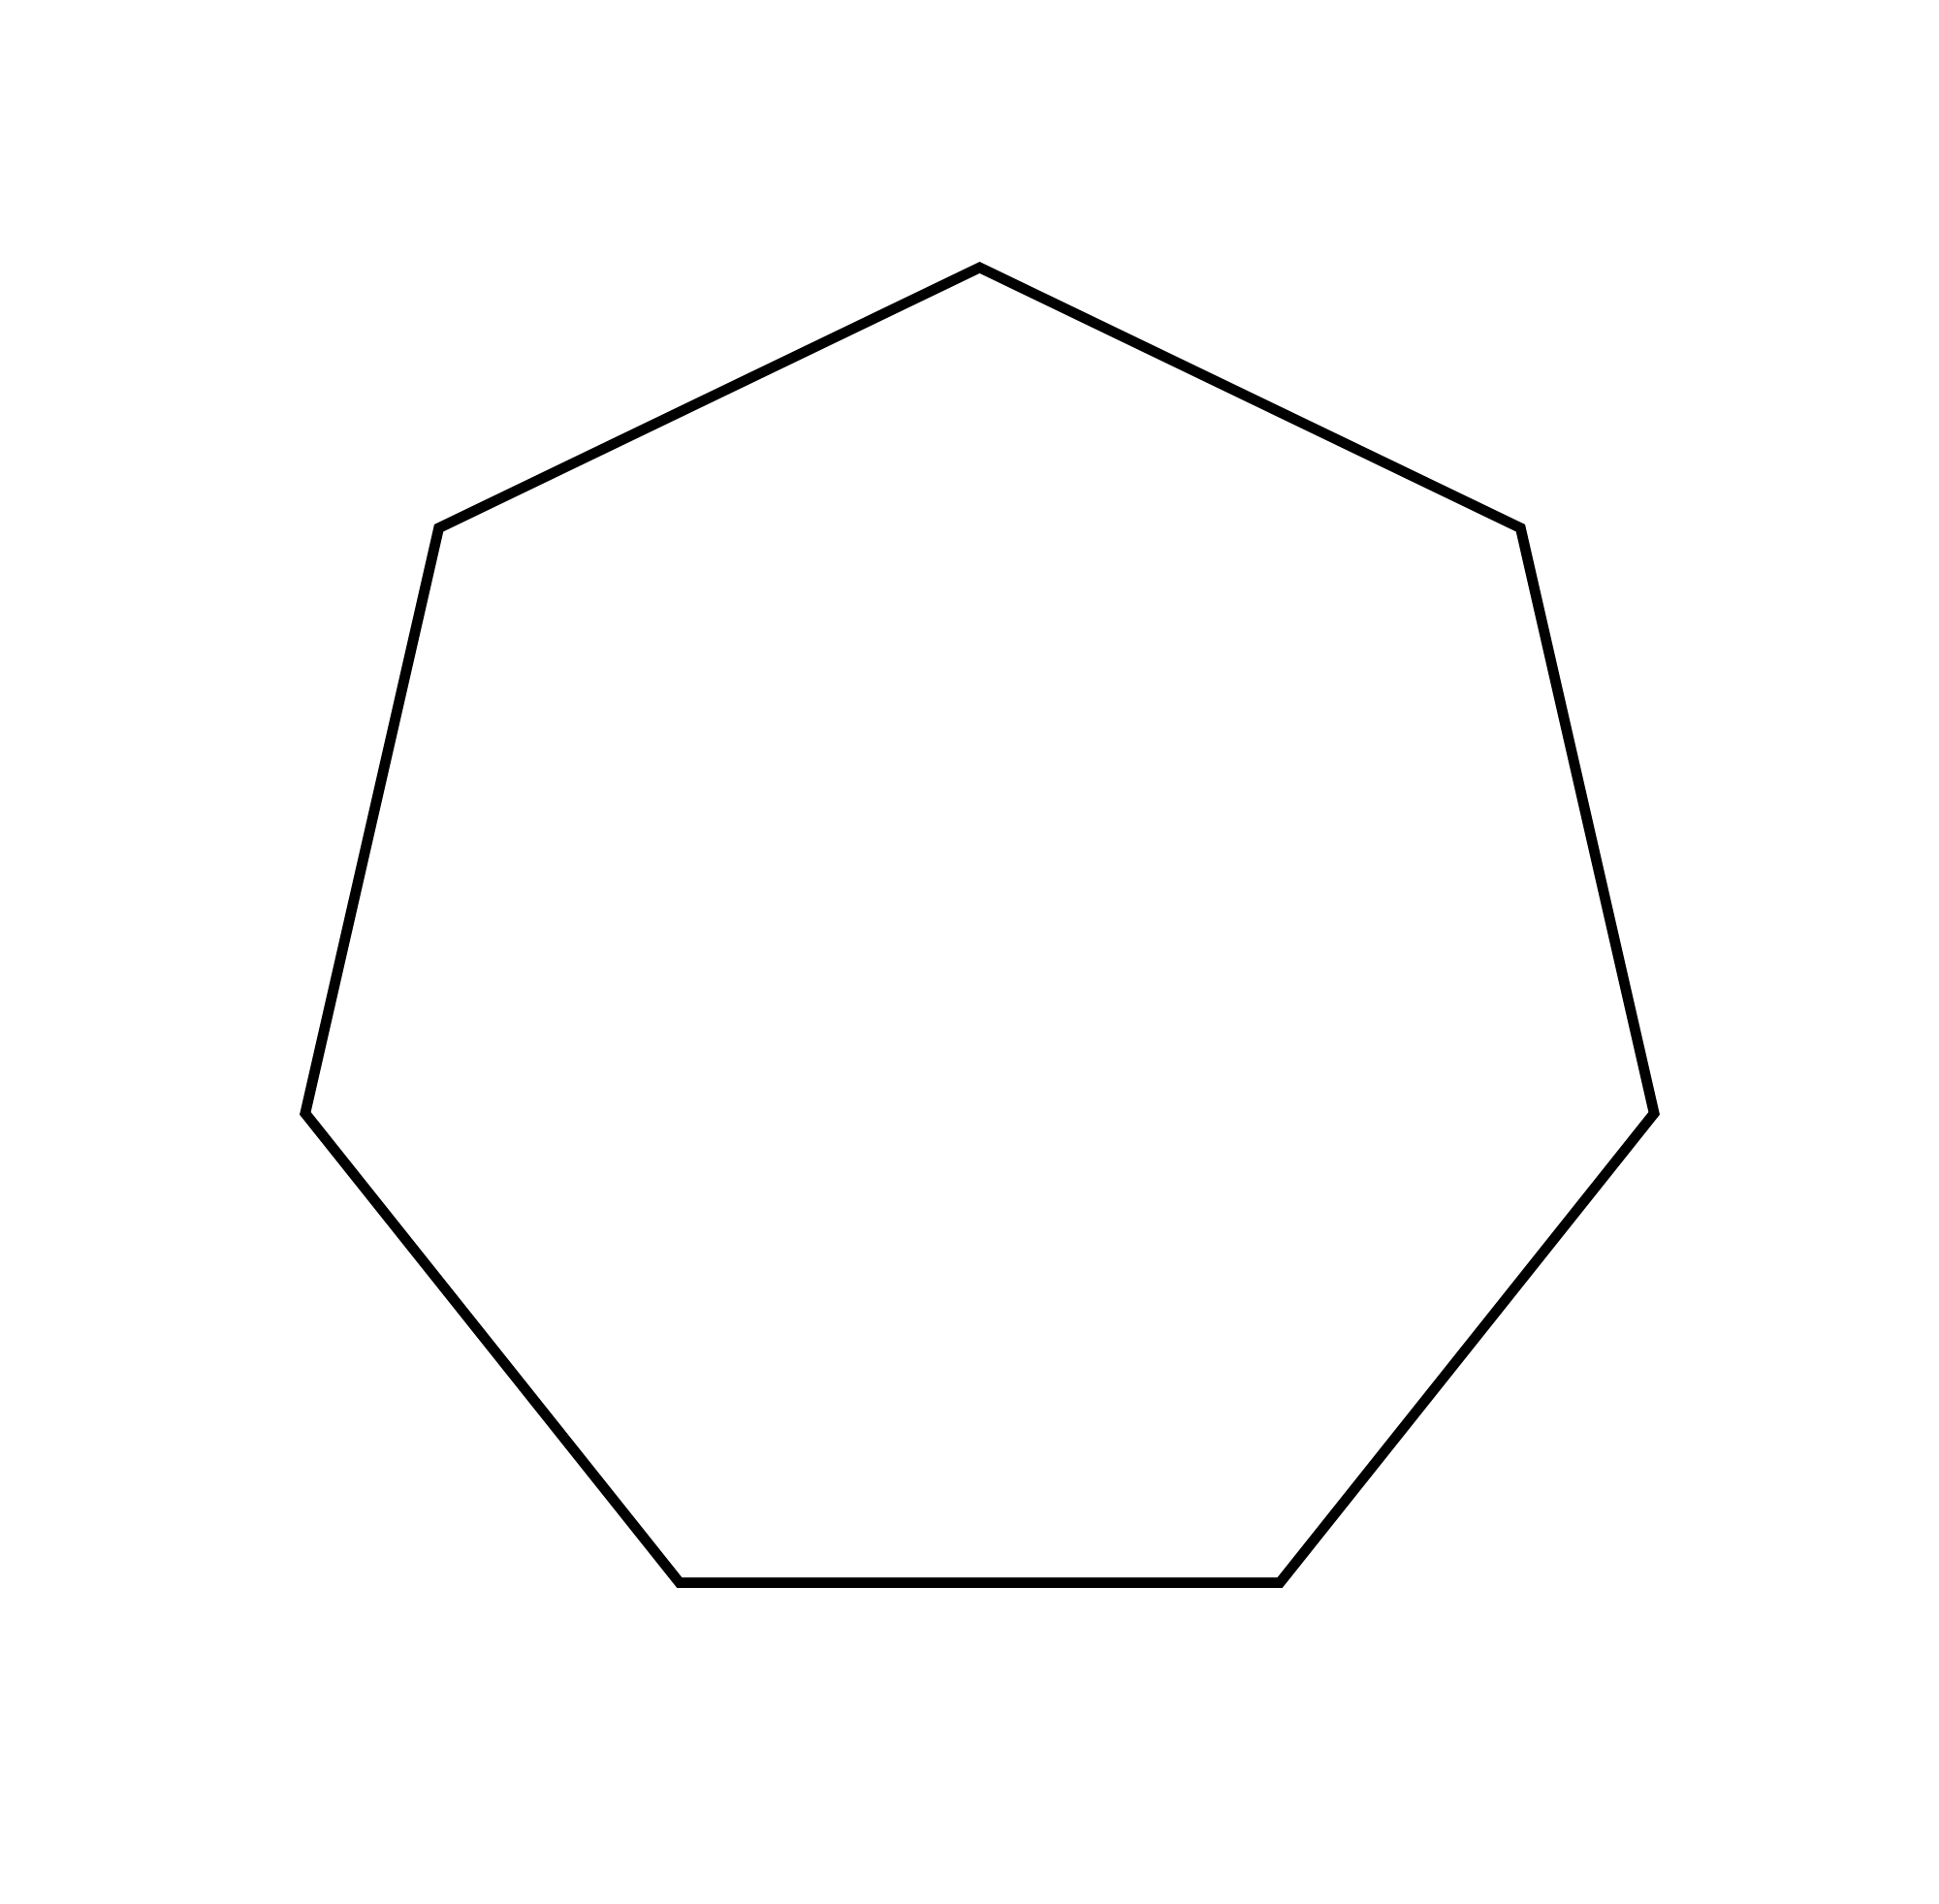 Figure geometriche - Figura geometrica piana - Ettagono poligono a 7 lati